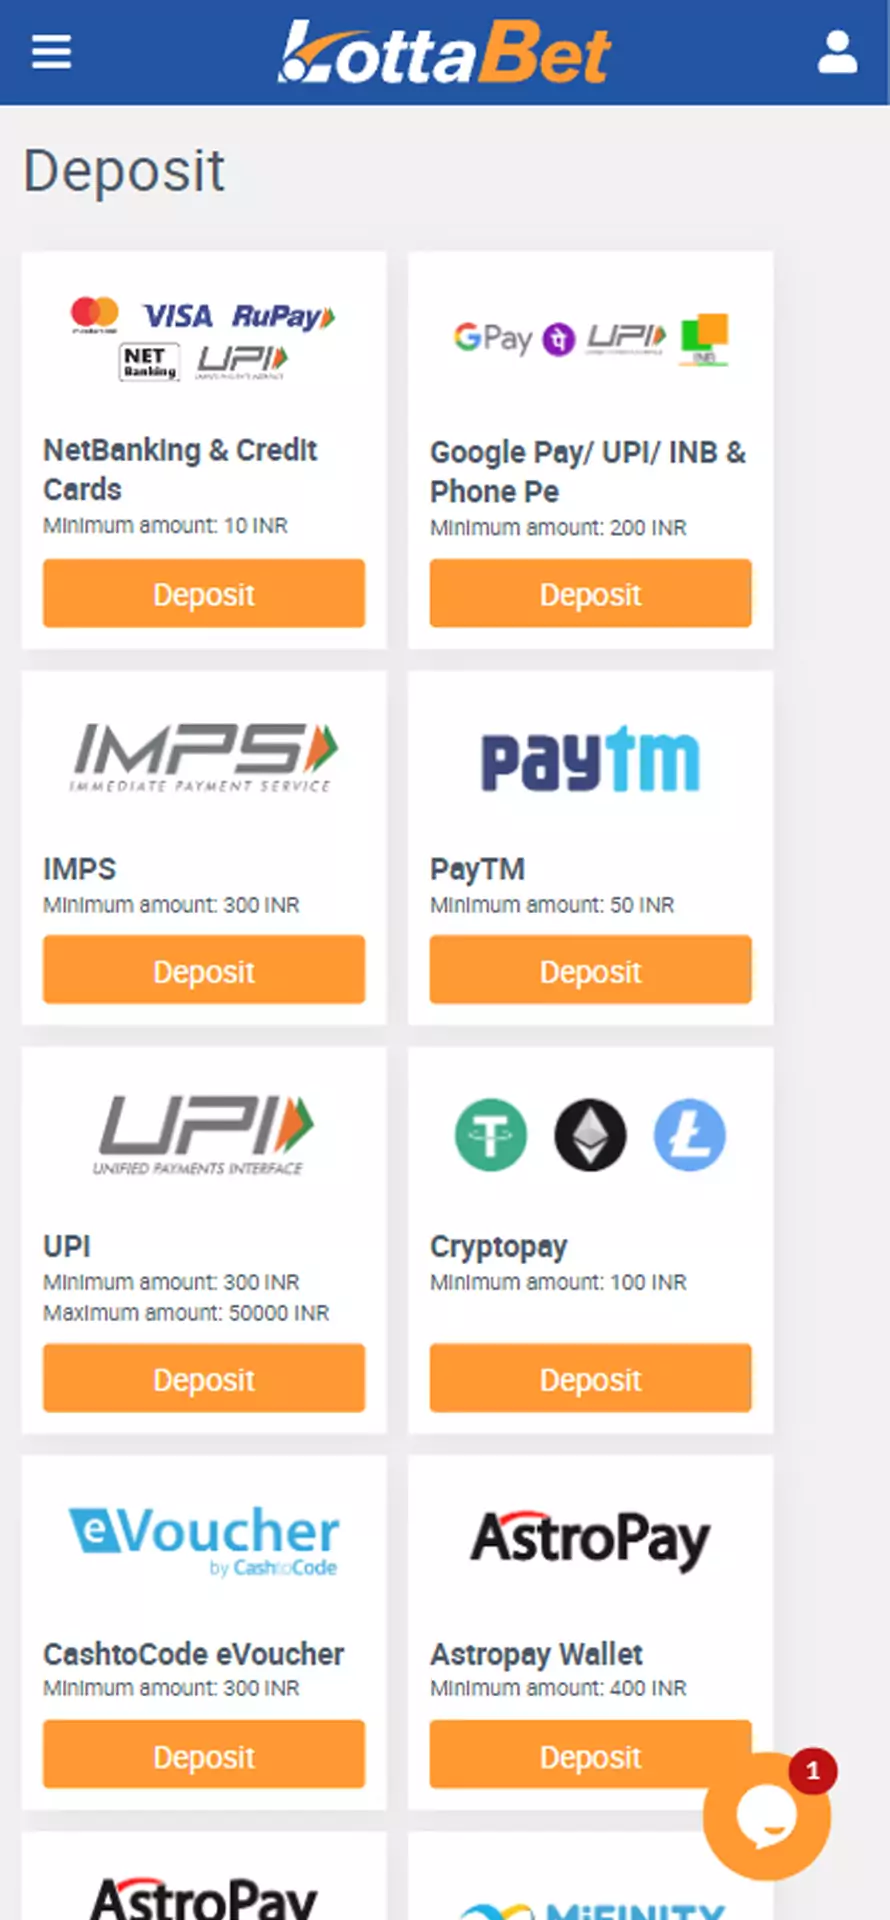 LottaBet app has various deposit methods.